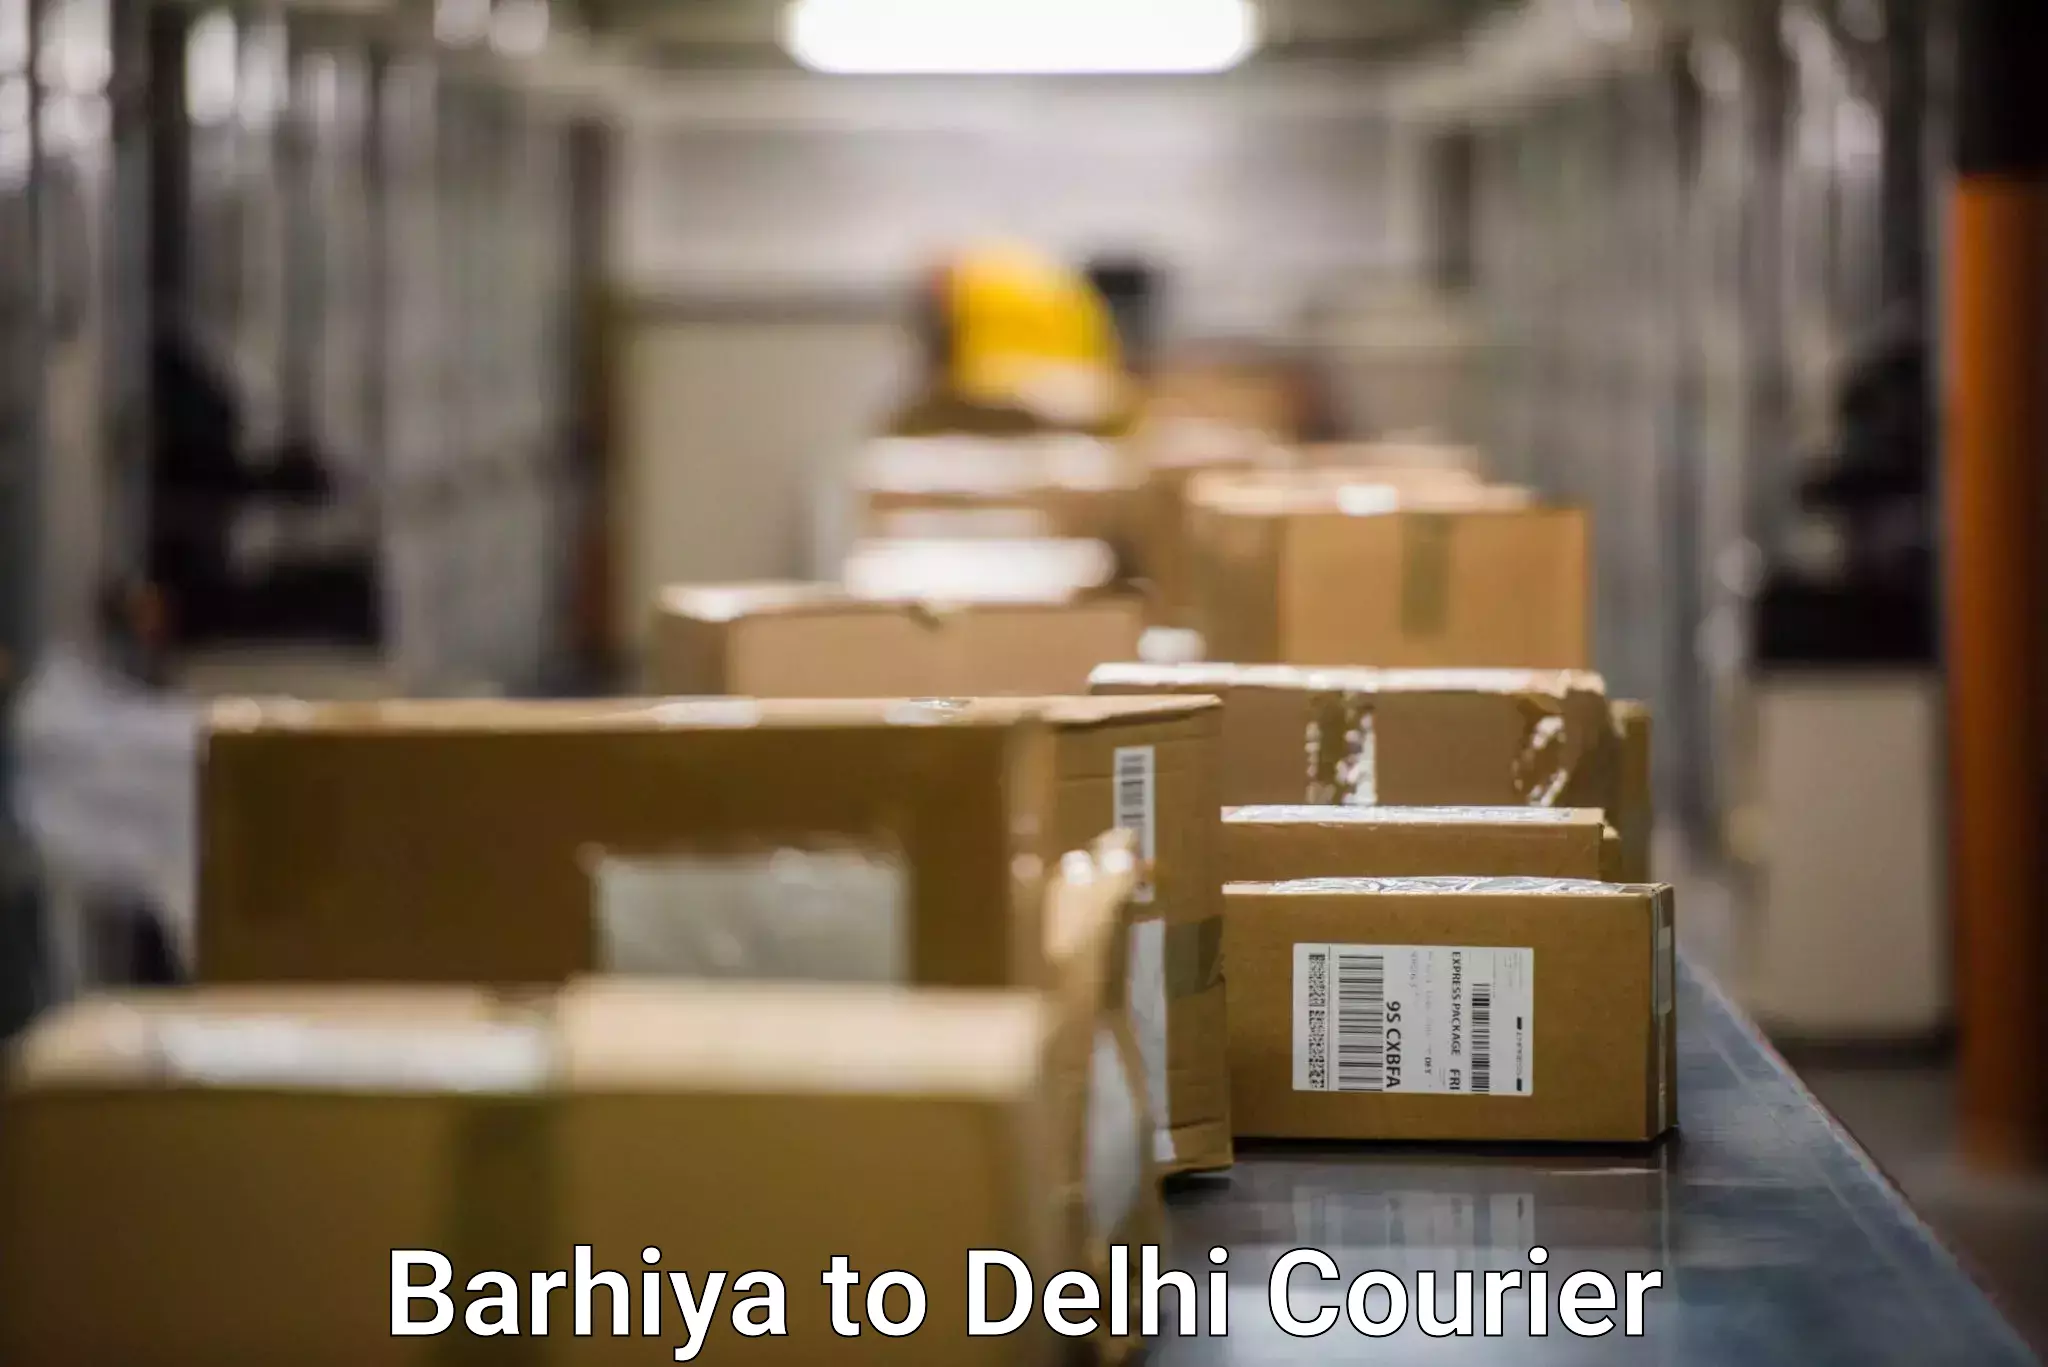 Courier service innovation Barhiya to Jawaharlal Nehru University New Delhi